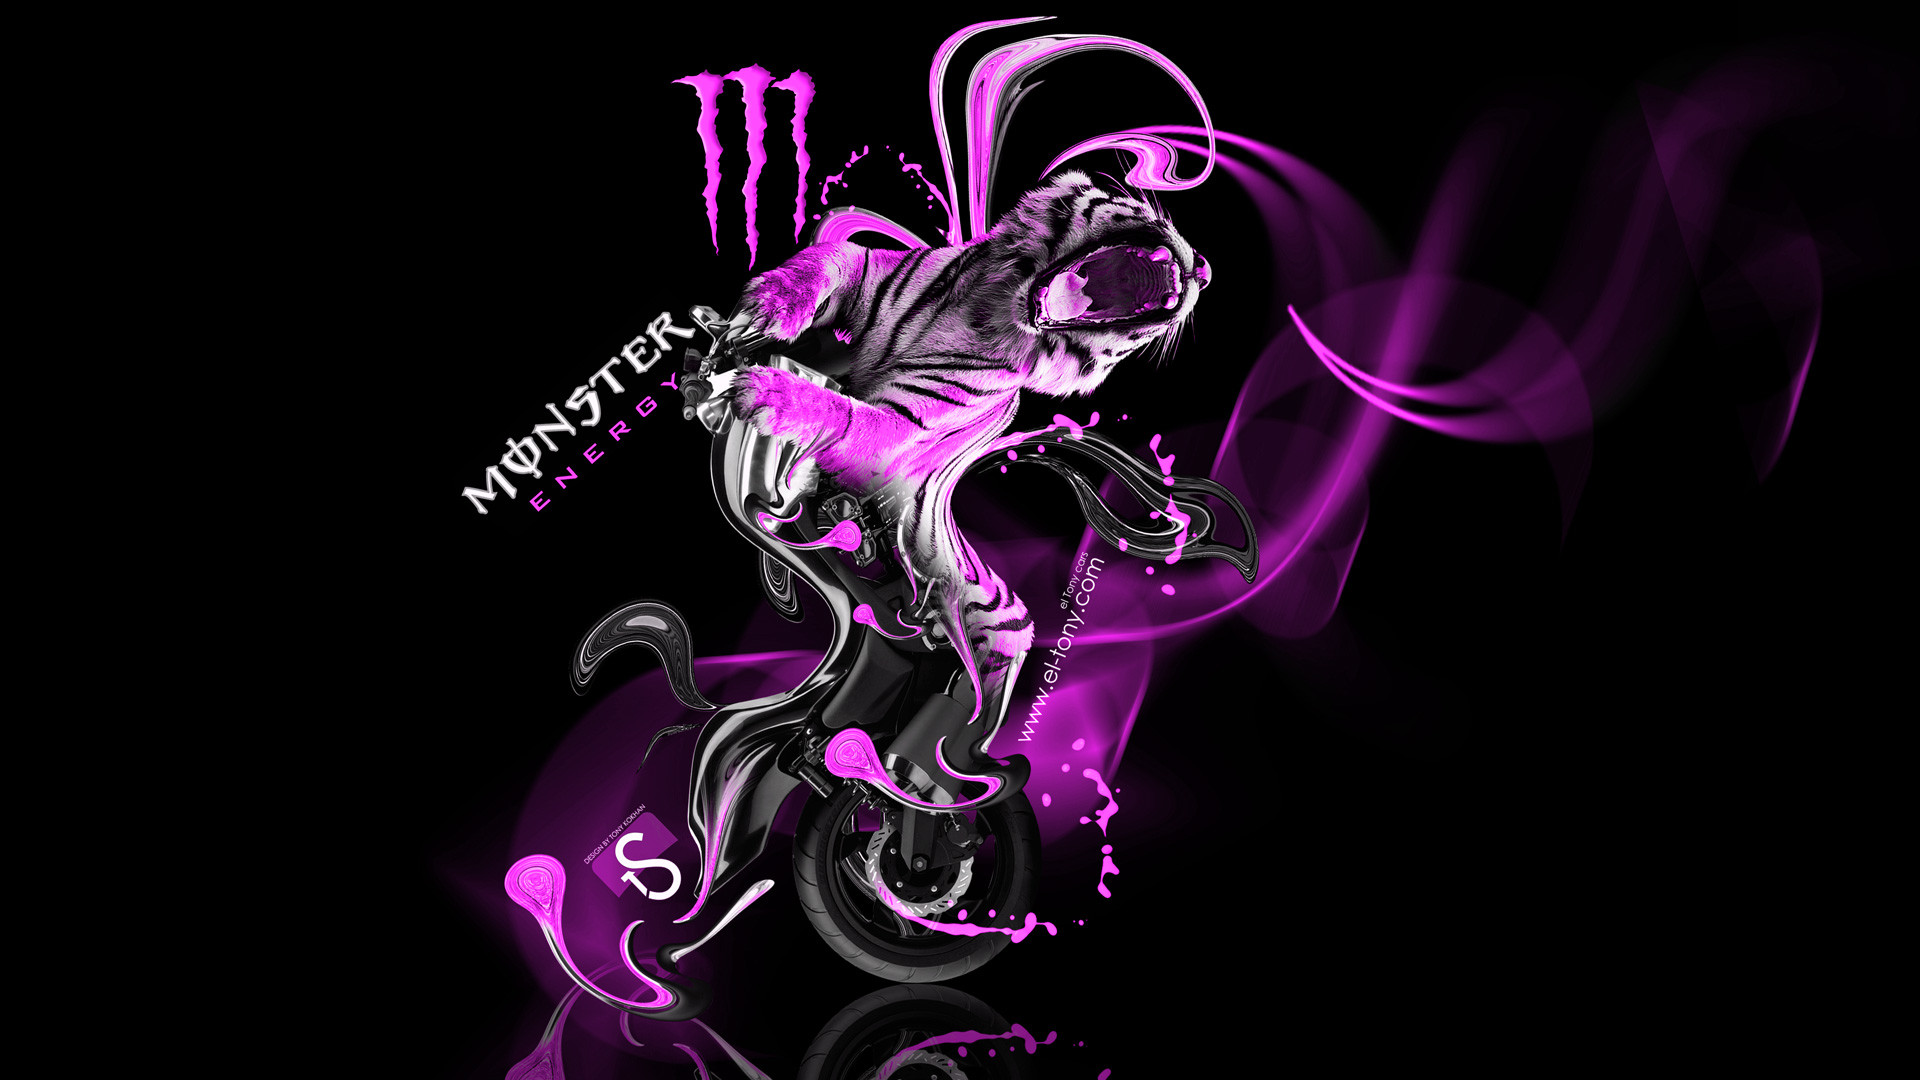 1920x1080 Pink Monster Energy Logo Wallpaper Monster energy yamaha vmax